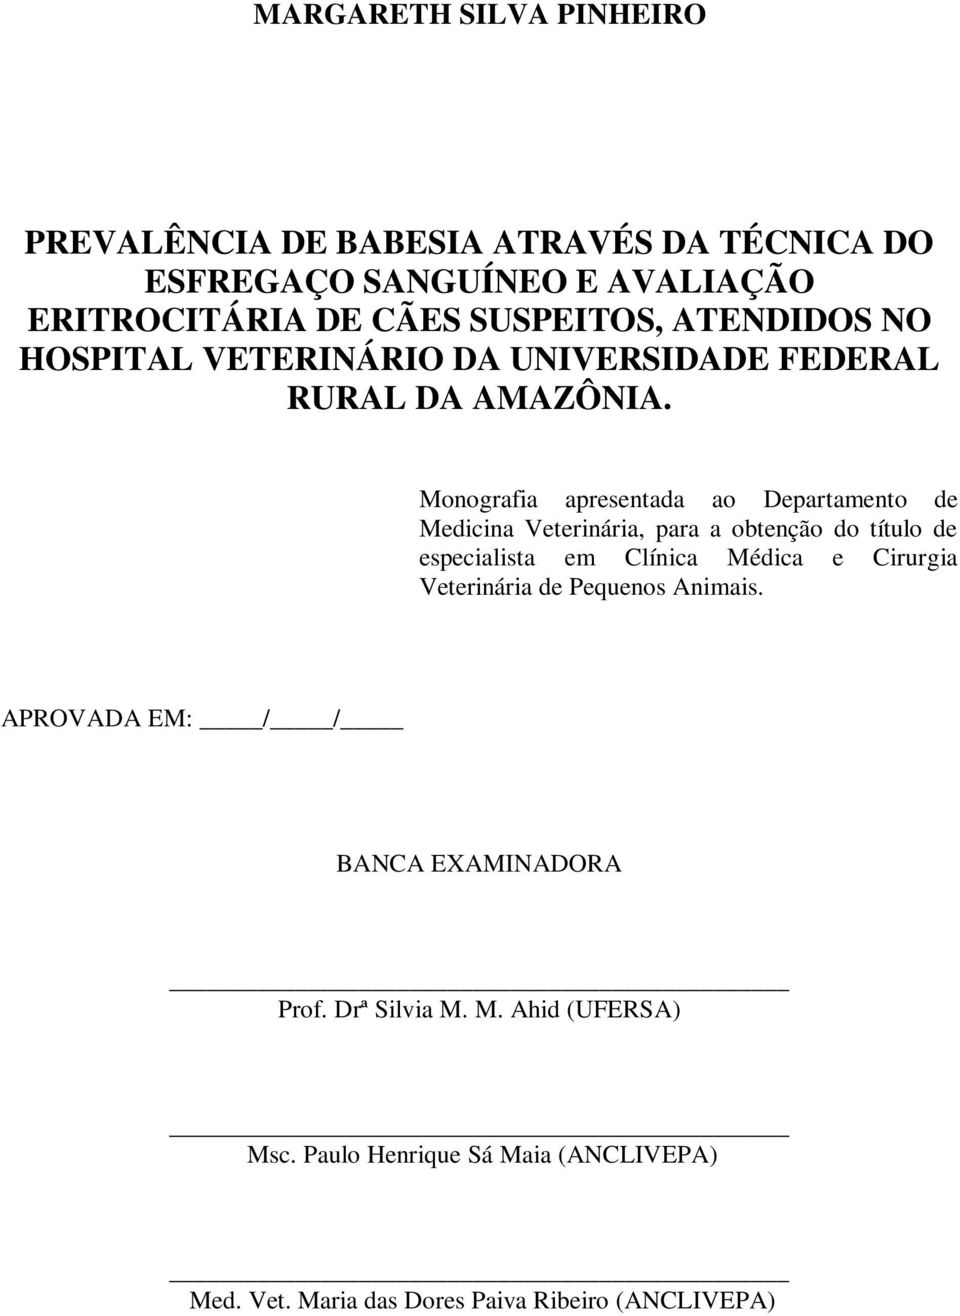 Monografia apresentada ao Departamento de Medicina Veterinária, para a obtenção do título de especialista em Clínica Médica e Cirurgia